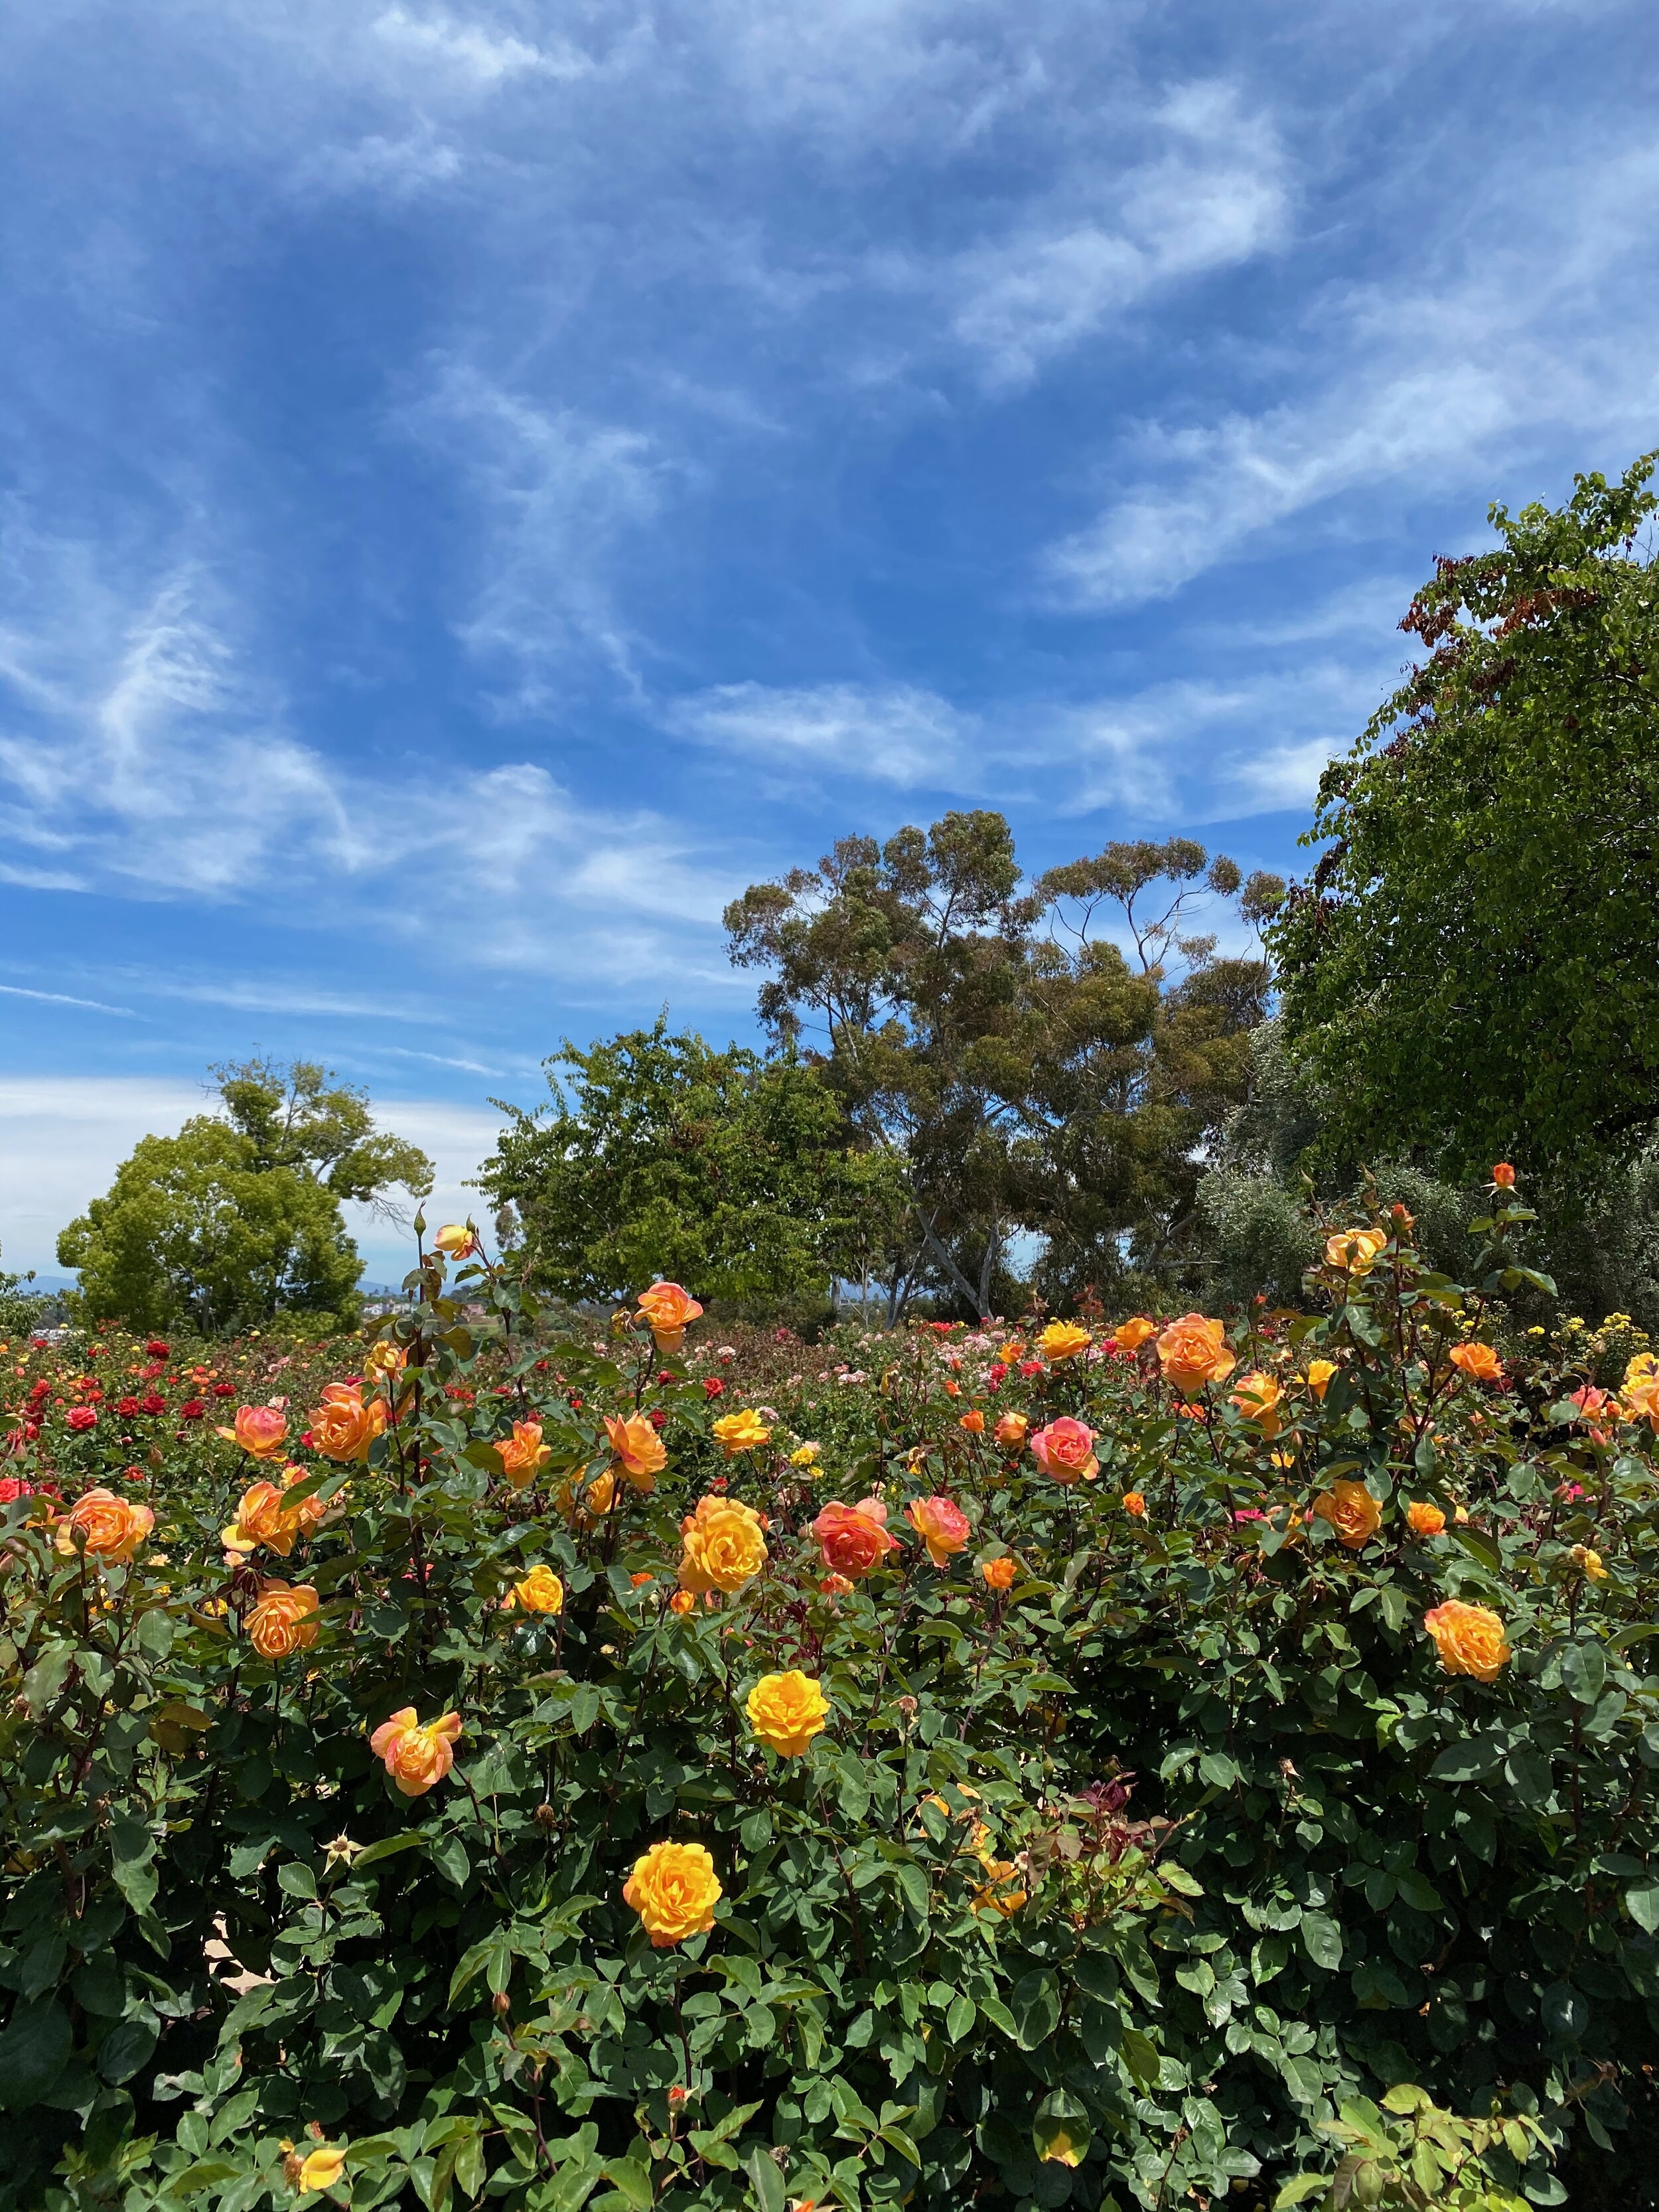 Balboa Park Rose Garden San Diego Rose Society